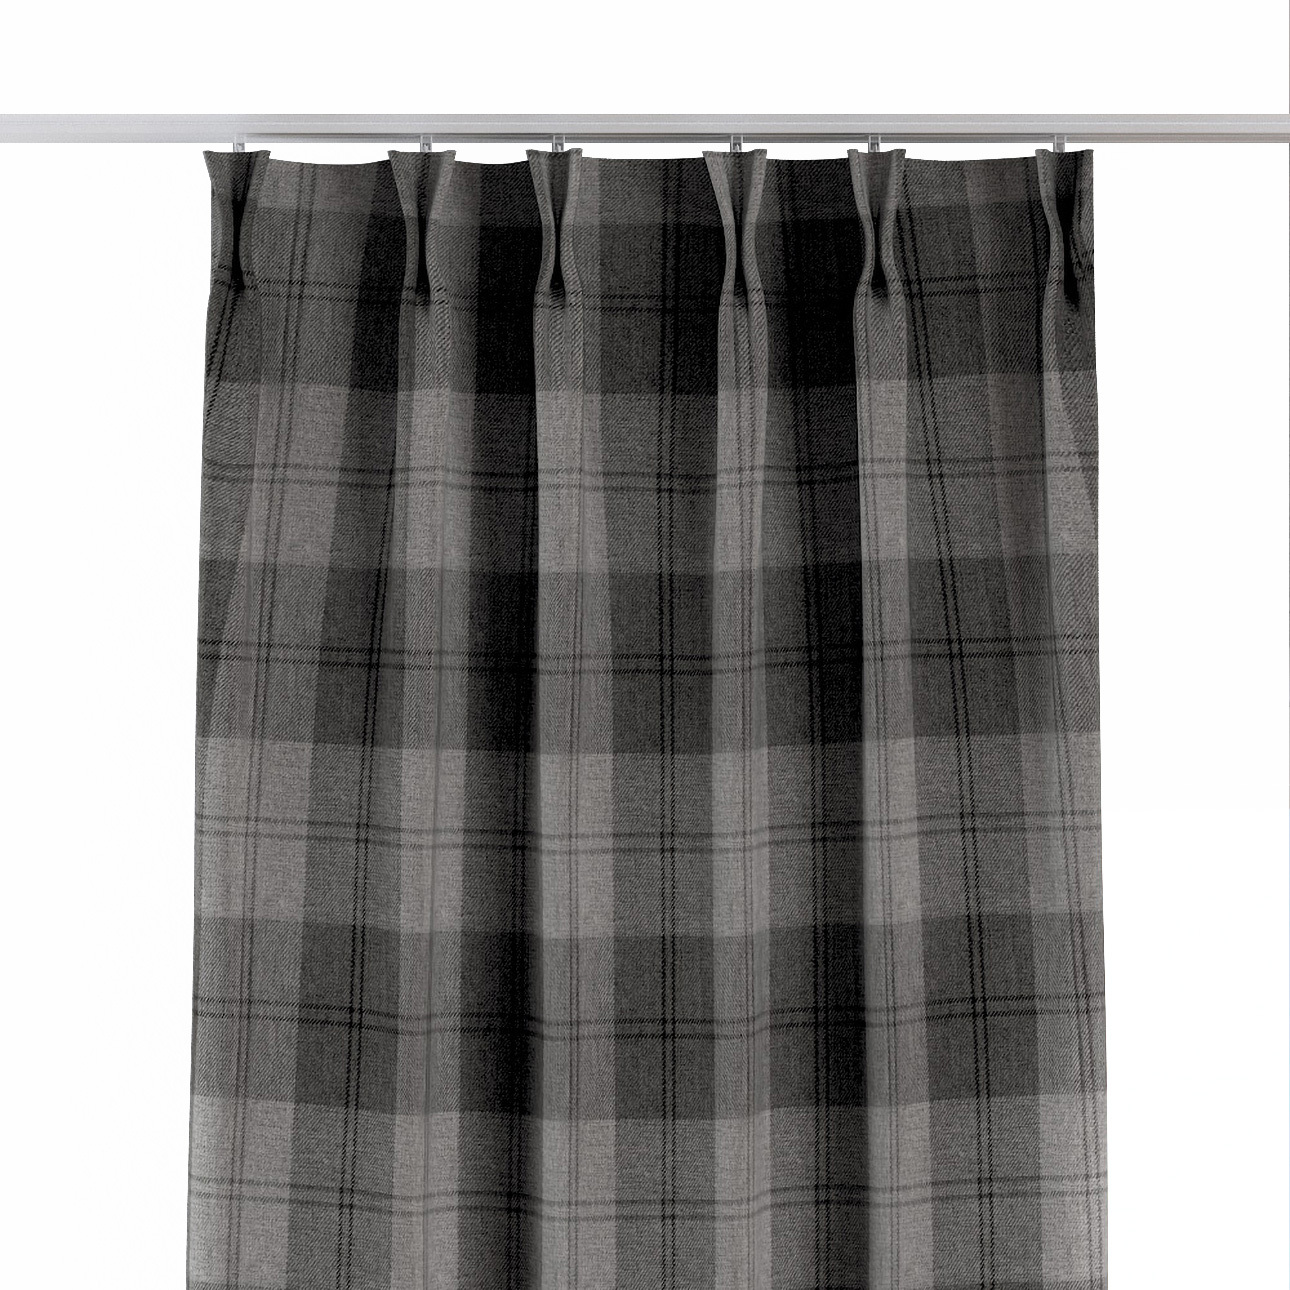 Vorhang mit flämischen 2-er Falten, grau-anthrazit, Edinburgh (115-75) günstig online kaufen